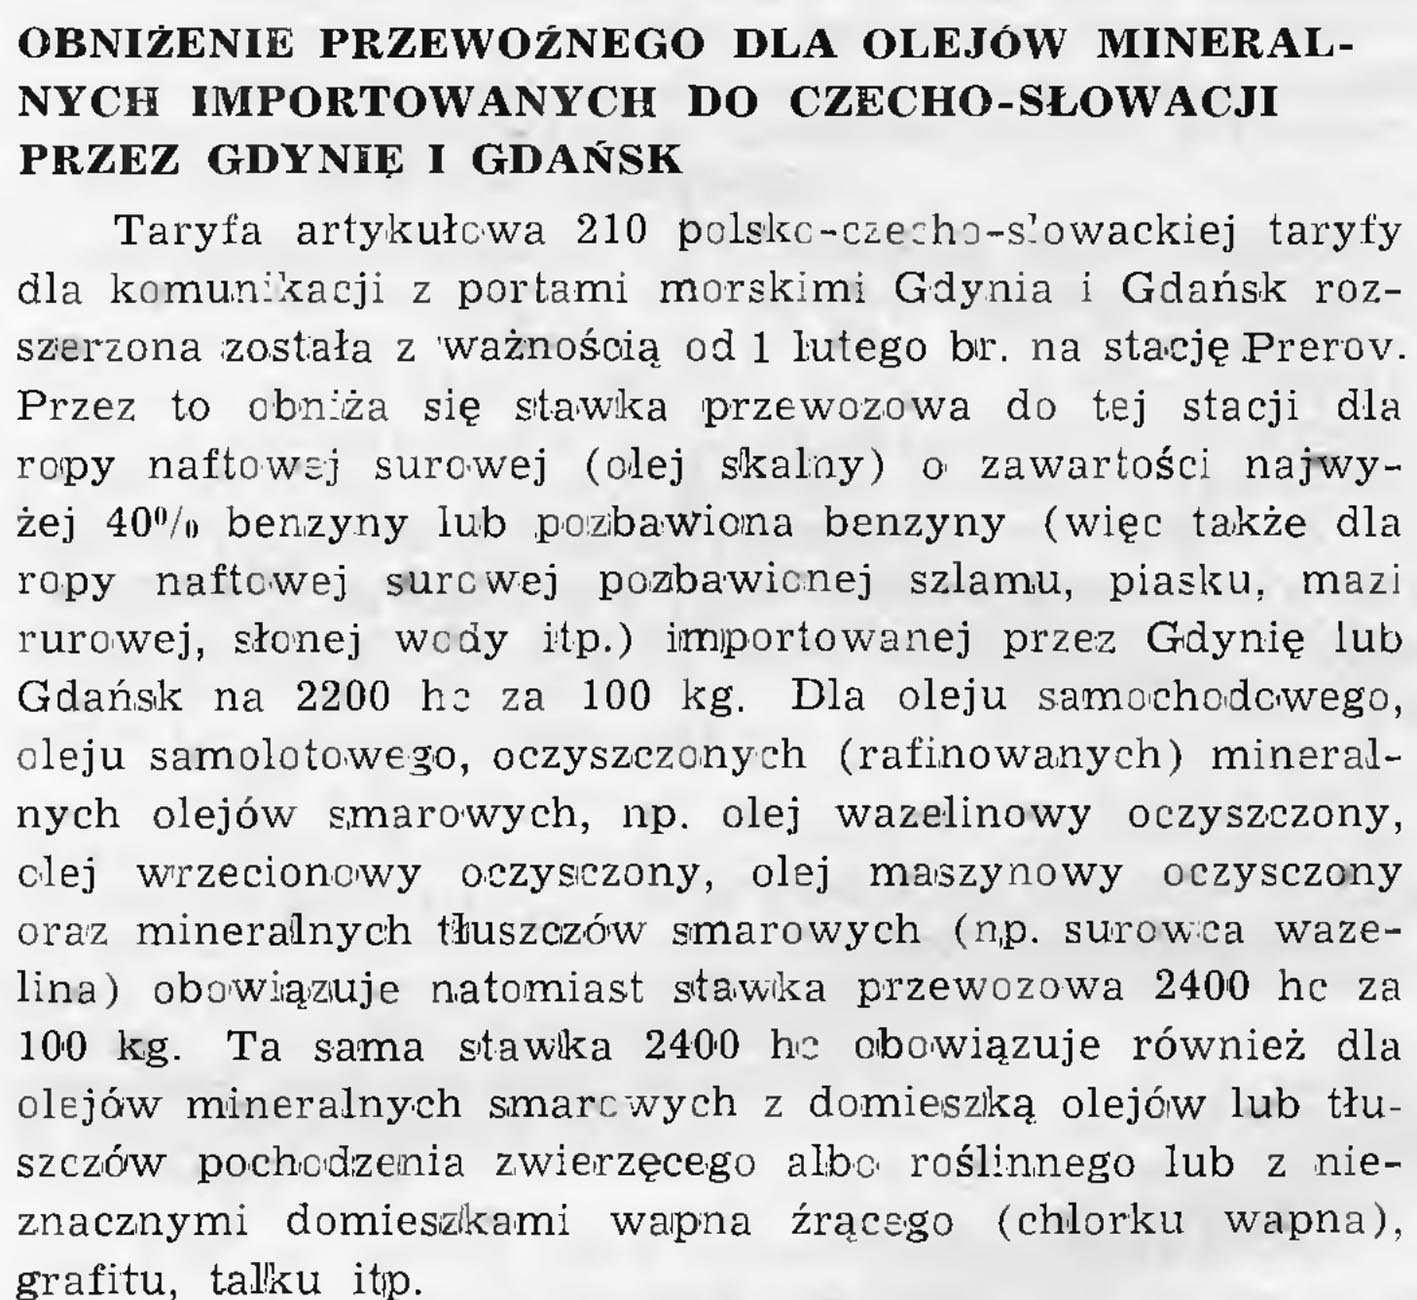 Obniżenie przewoźnego dla olejów mineralnych importowanych do Czecho-Słowacji przez Gdynię i Gdańsk. - 1939, nr 1/2, s. 7 